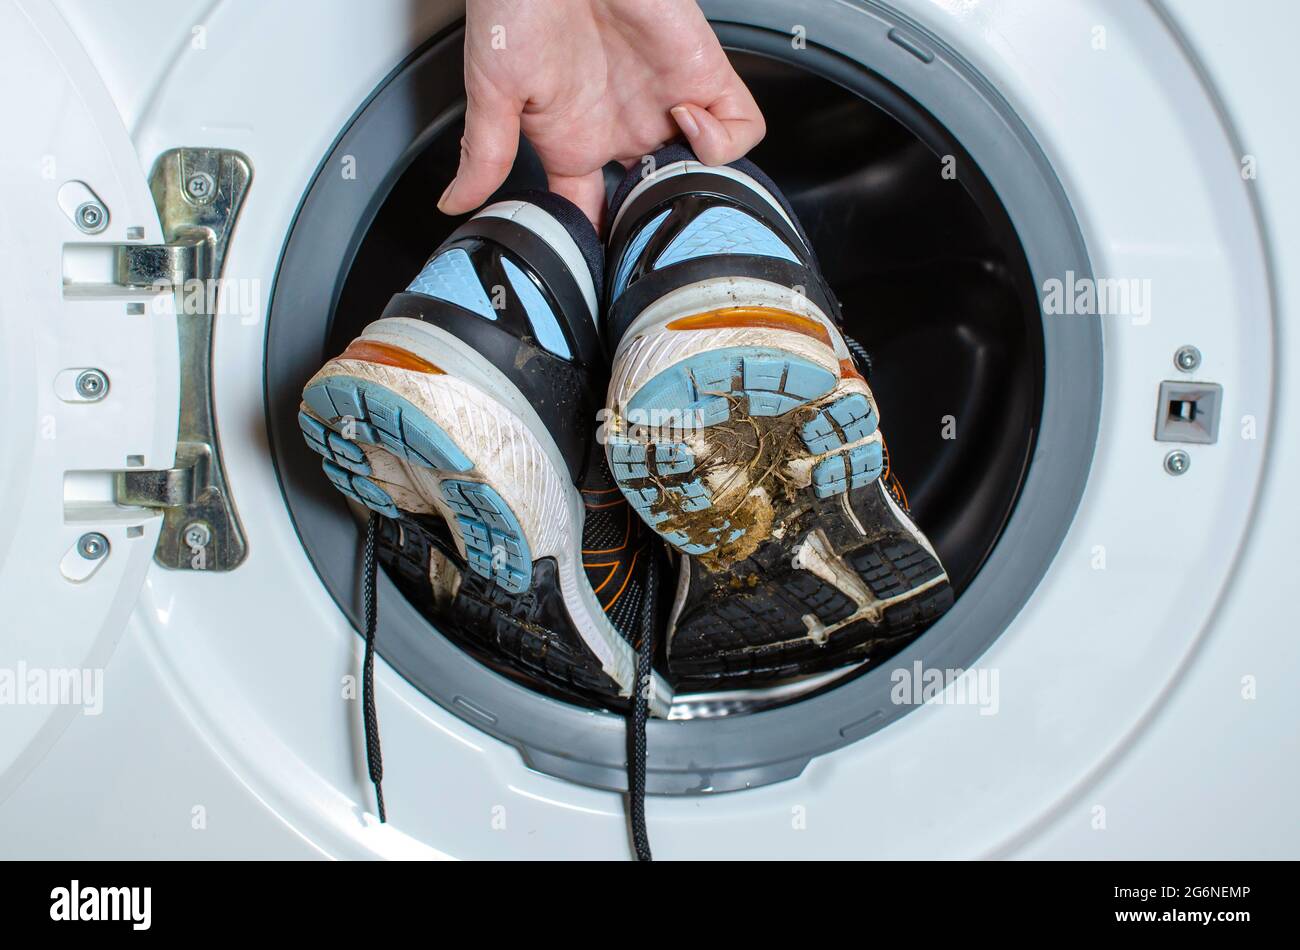 Schmutzige Turnschuhe in der Waschmaschine waschen. Die Sohle deines  Laufschuhs wird gereinigt. Schmutzige Turnschuhe waschen, saubere Schuhe. Turnschuhe  waschen Stockfotografie - Alamy